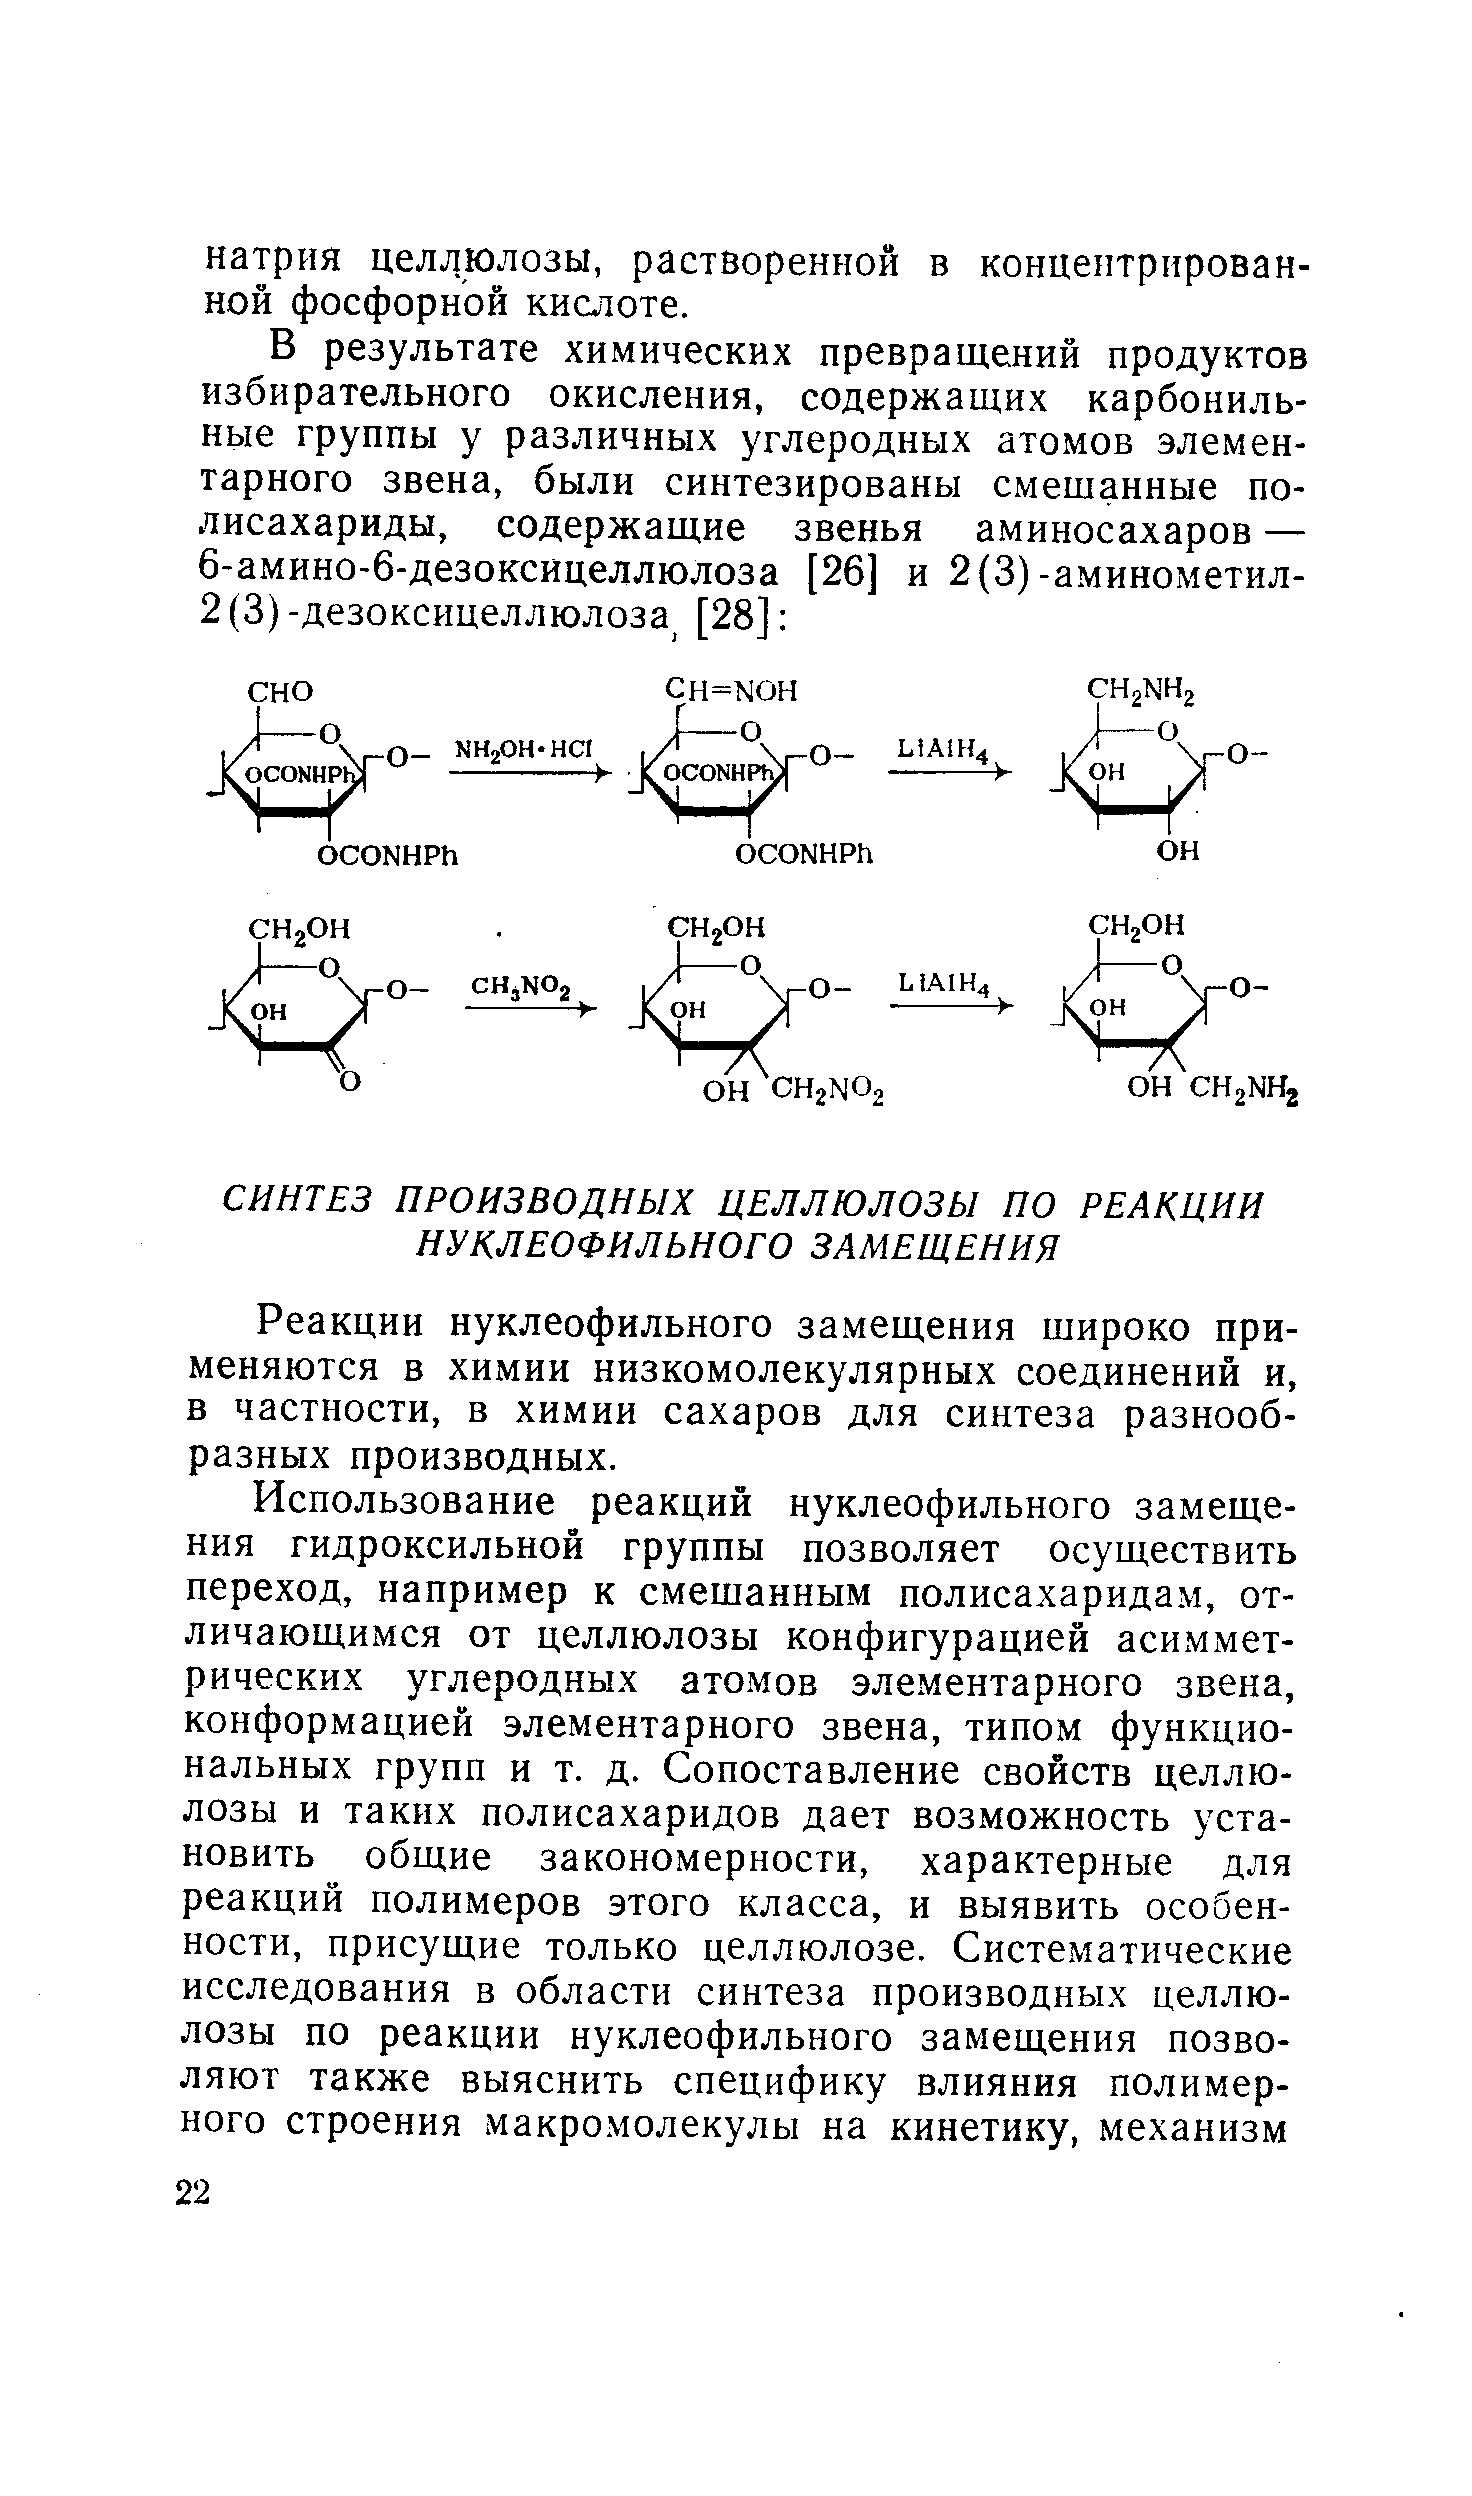 Реакции нуклеофильного замещения широко применяются в химии низкомолекулярных соединений и, в частности, в химии сахаров для синтеза разнообразных производных.